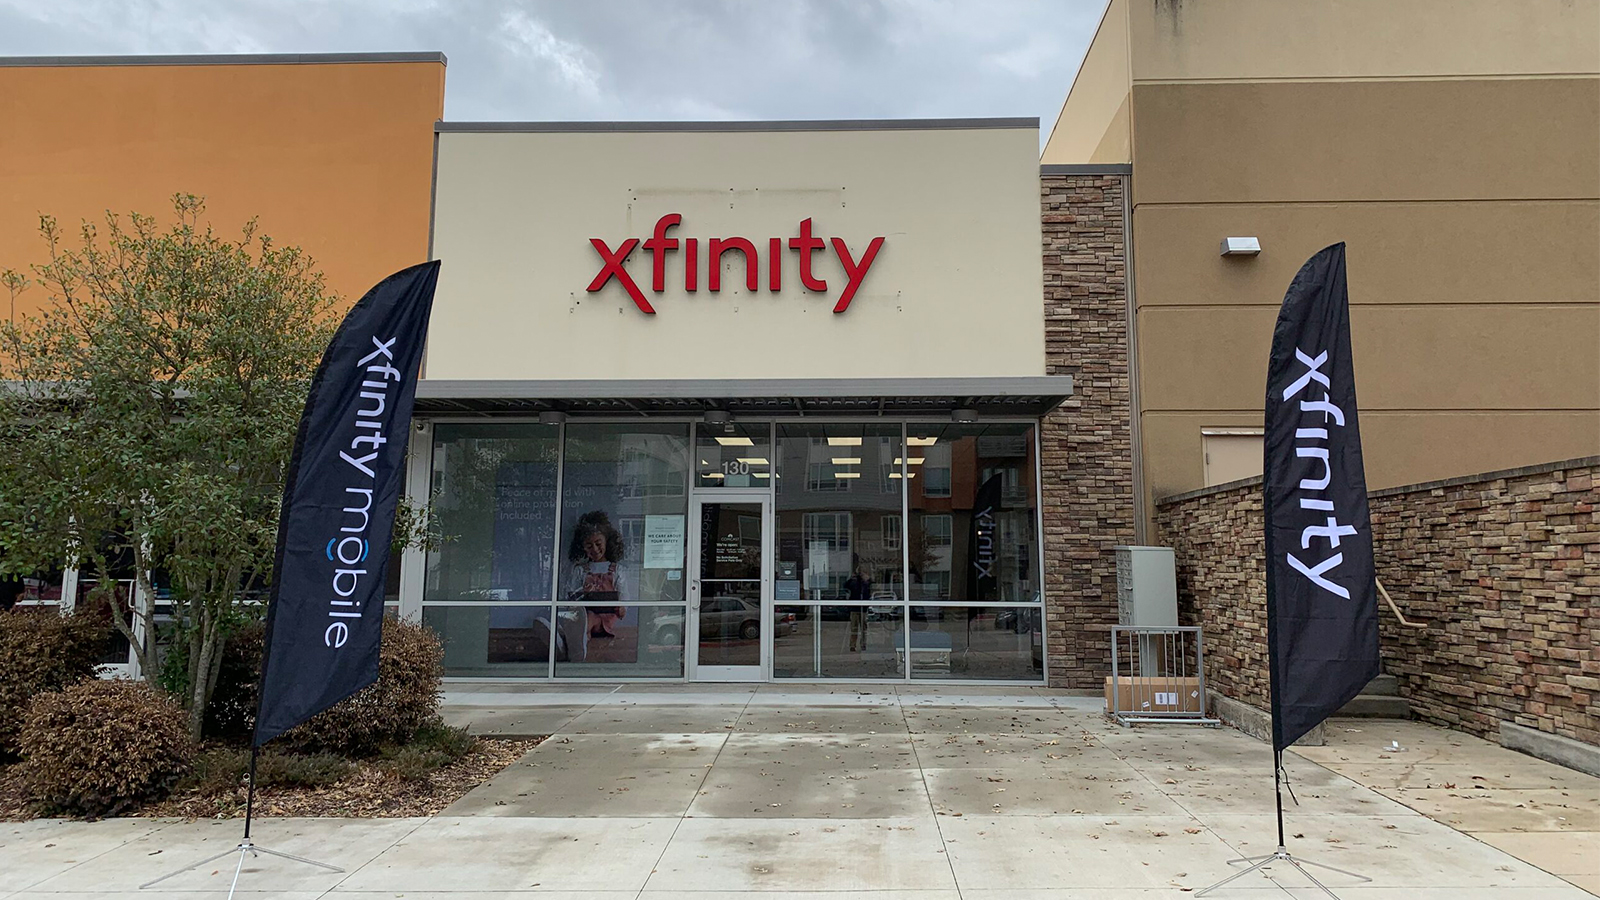 Xfinity store in Little Rock, Arkansas.